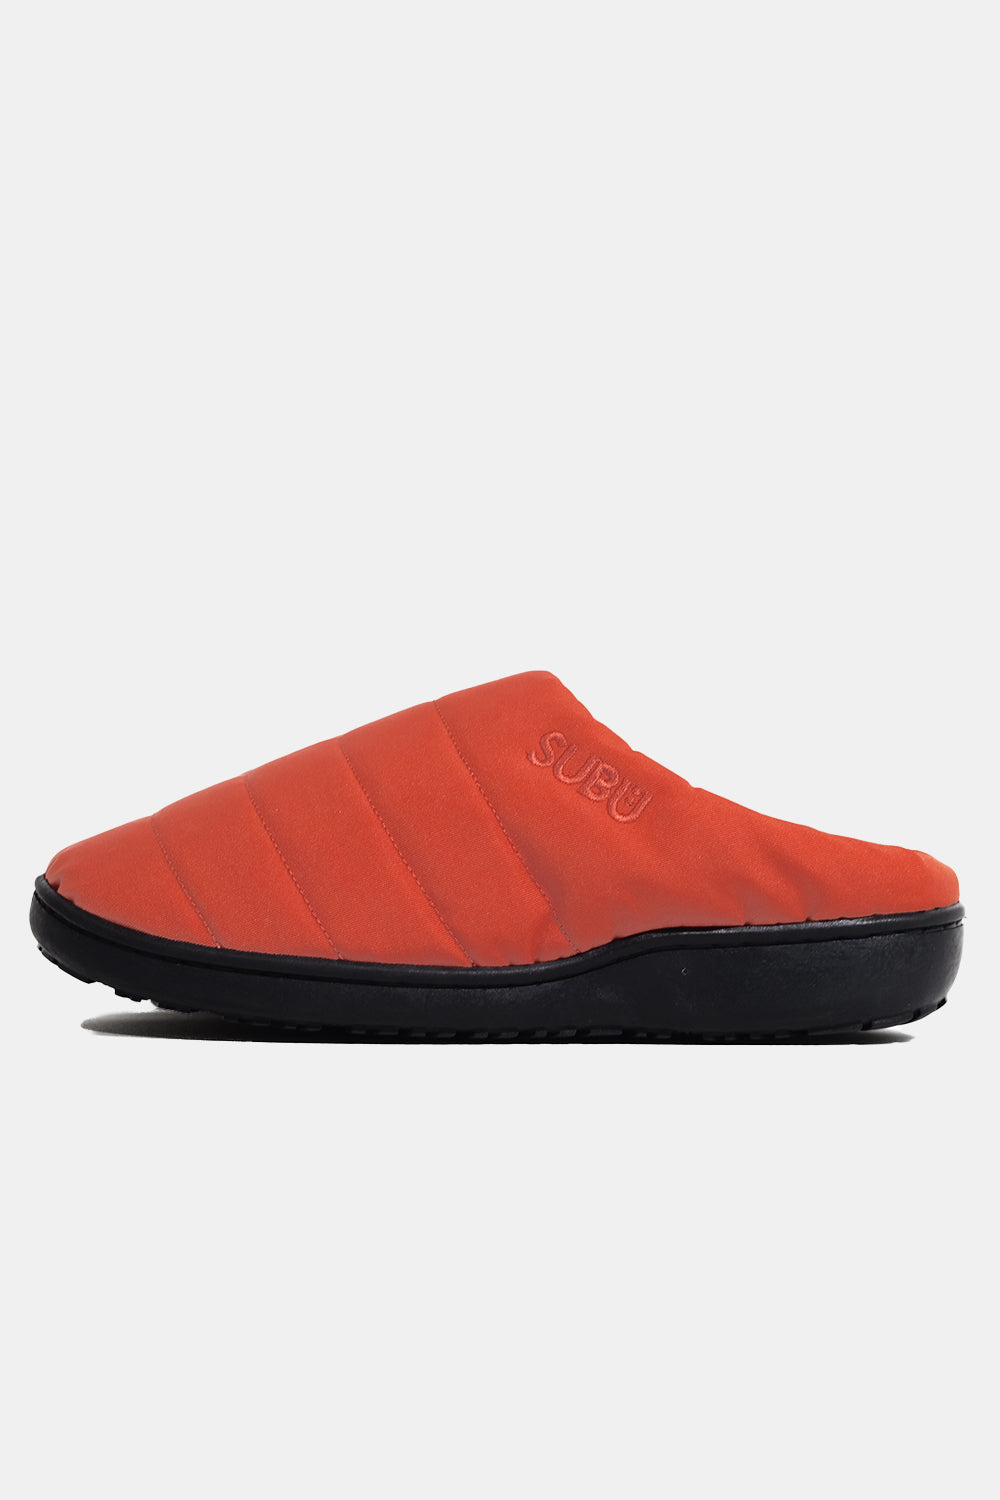 SUBU Indoor Outdoor Nannen Slippers (Orange) | Number Six